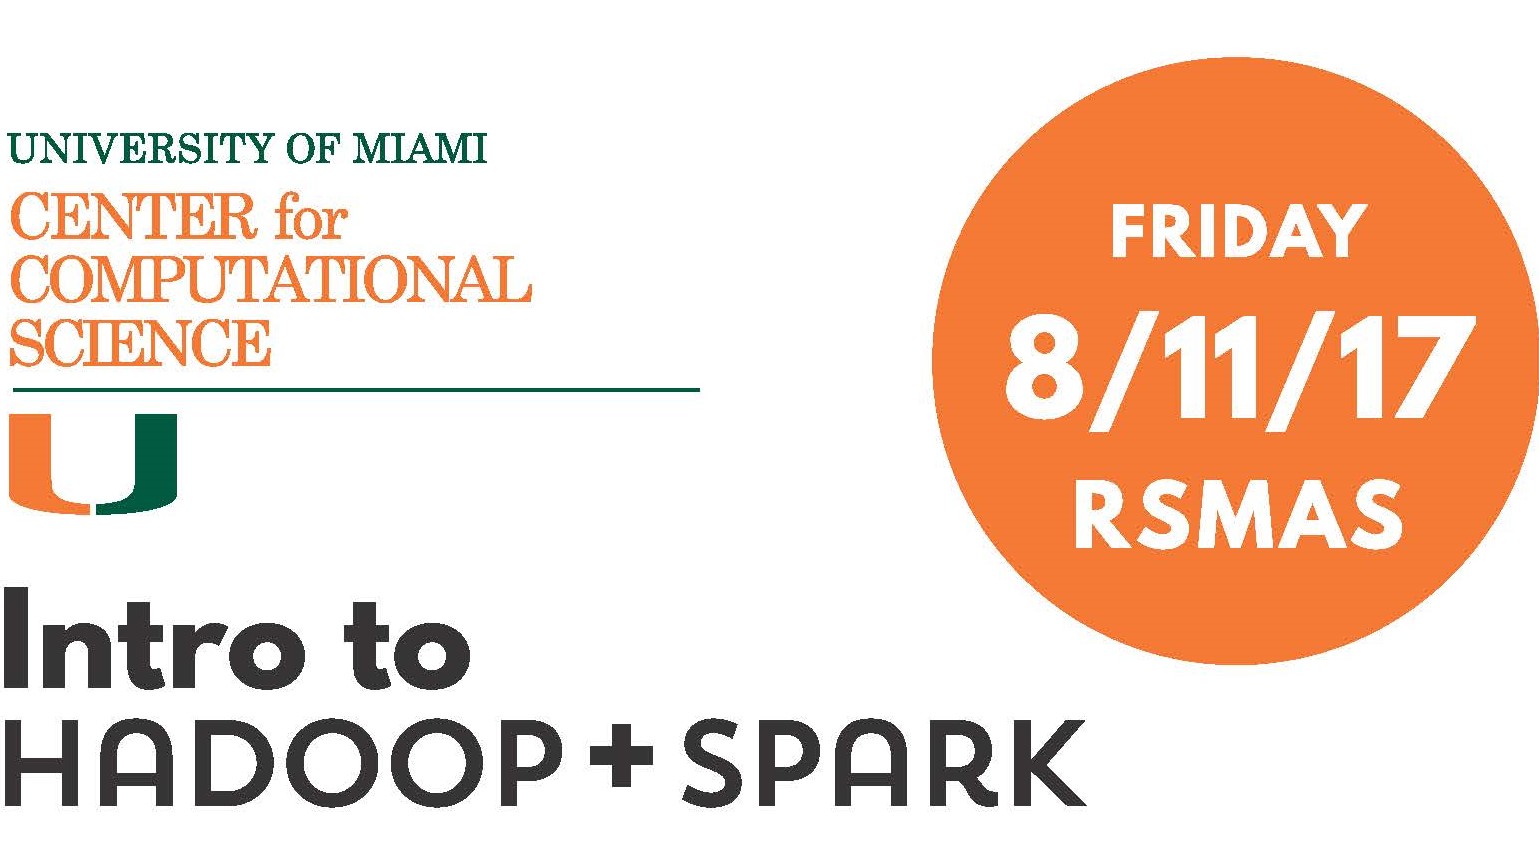 Hadoop-Spark Workshop on August 11